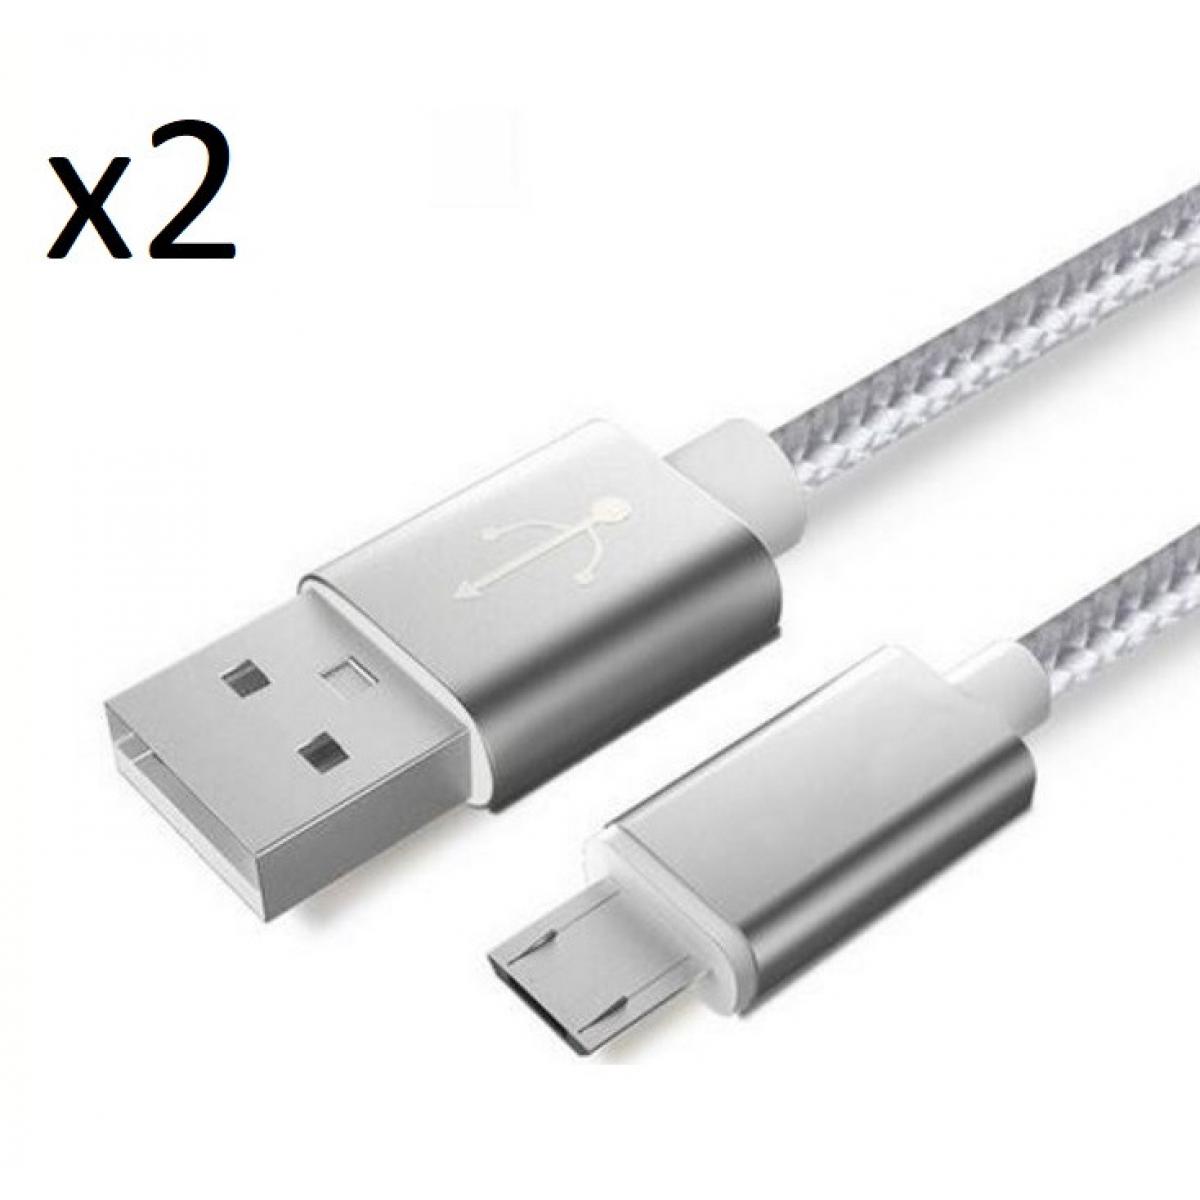 Shot - Pack de 2 Cables Metal Nylon Micro USB pour SAMSUNG Galaxy J6+ Smartphone Android Chargeur (ARGENT) - Chargeur secteur téléphone